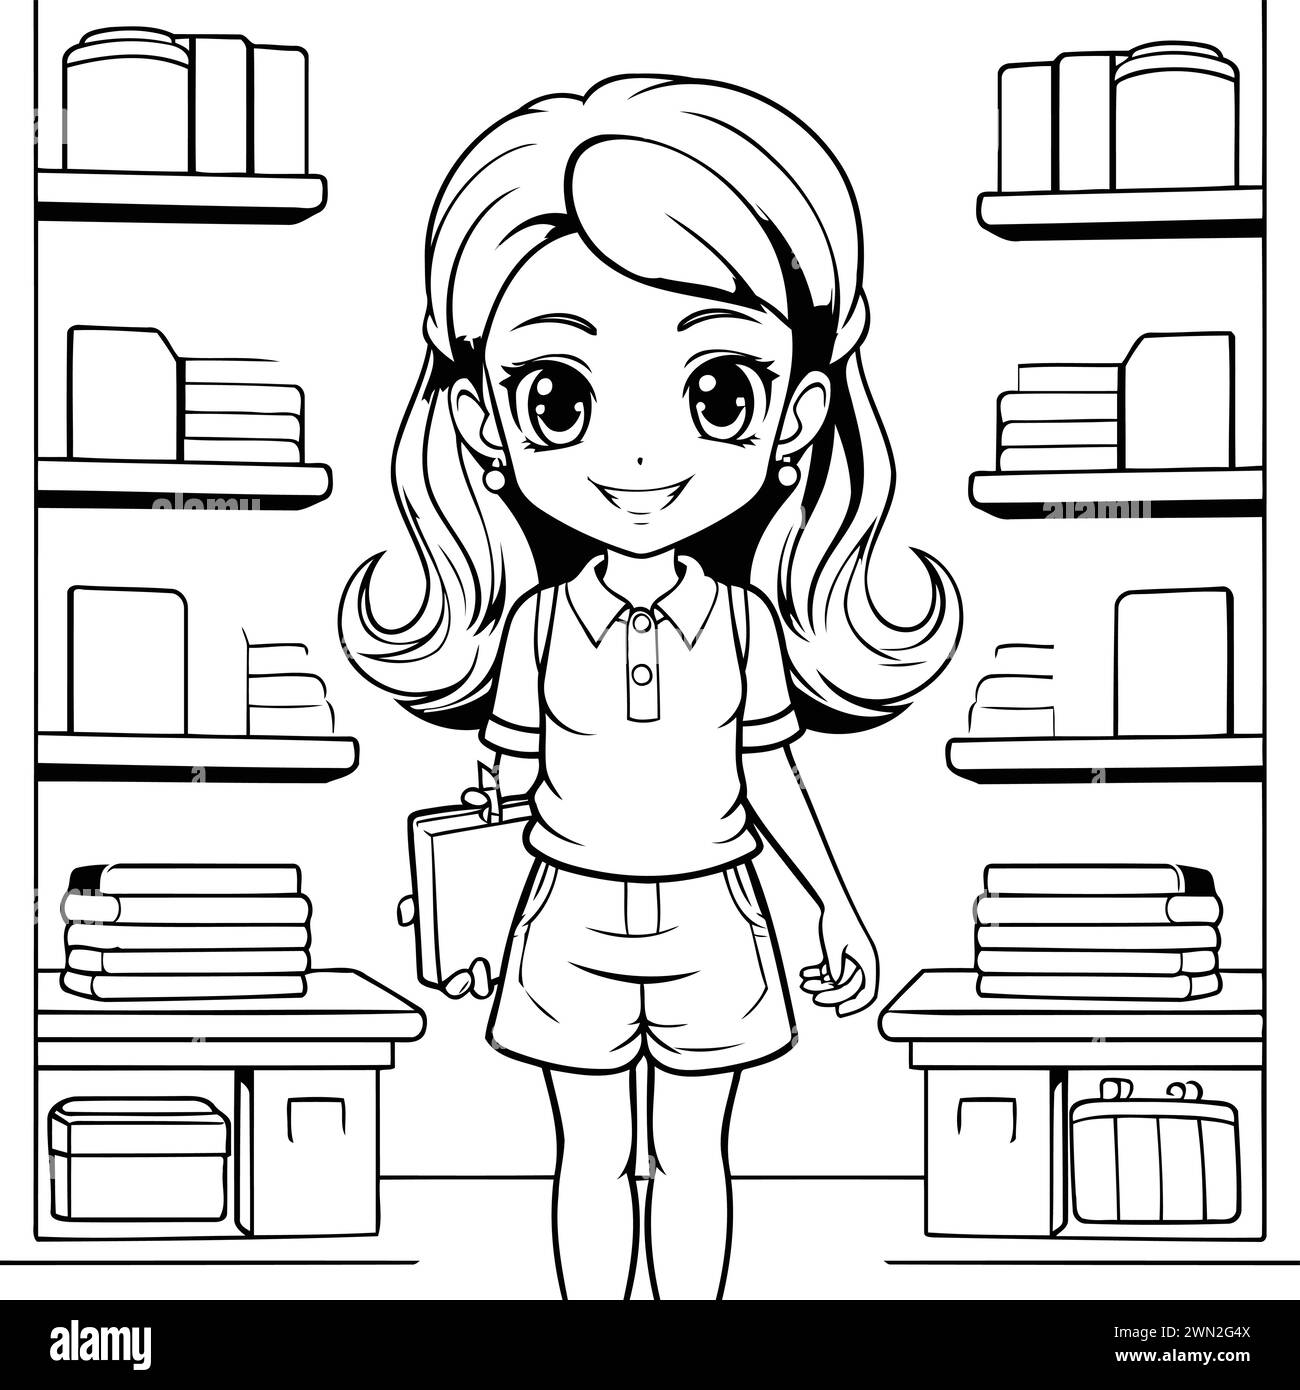 Schwarz-weiß-Zeichentrickillustration von Schulmädchen mit Büchern auf Regal in Bibliothek oder Buchhandlung Malbuch Stock Vektor